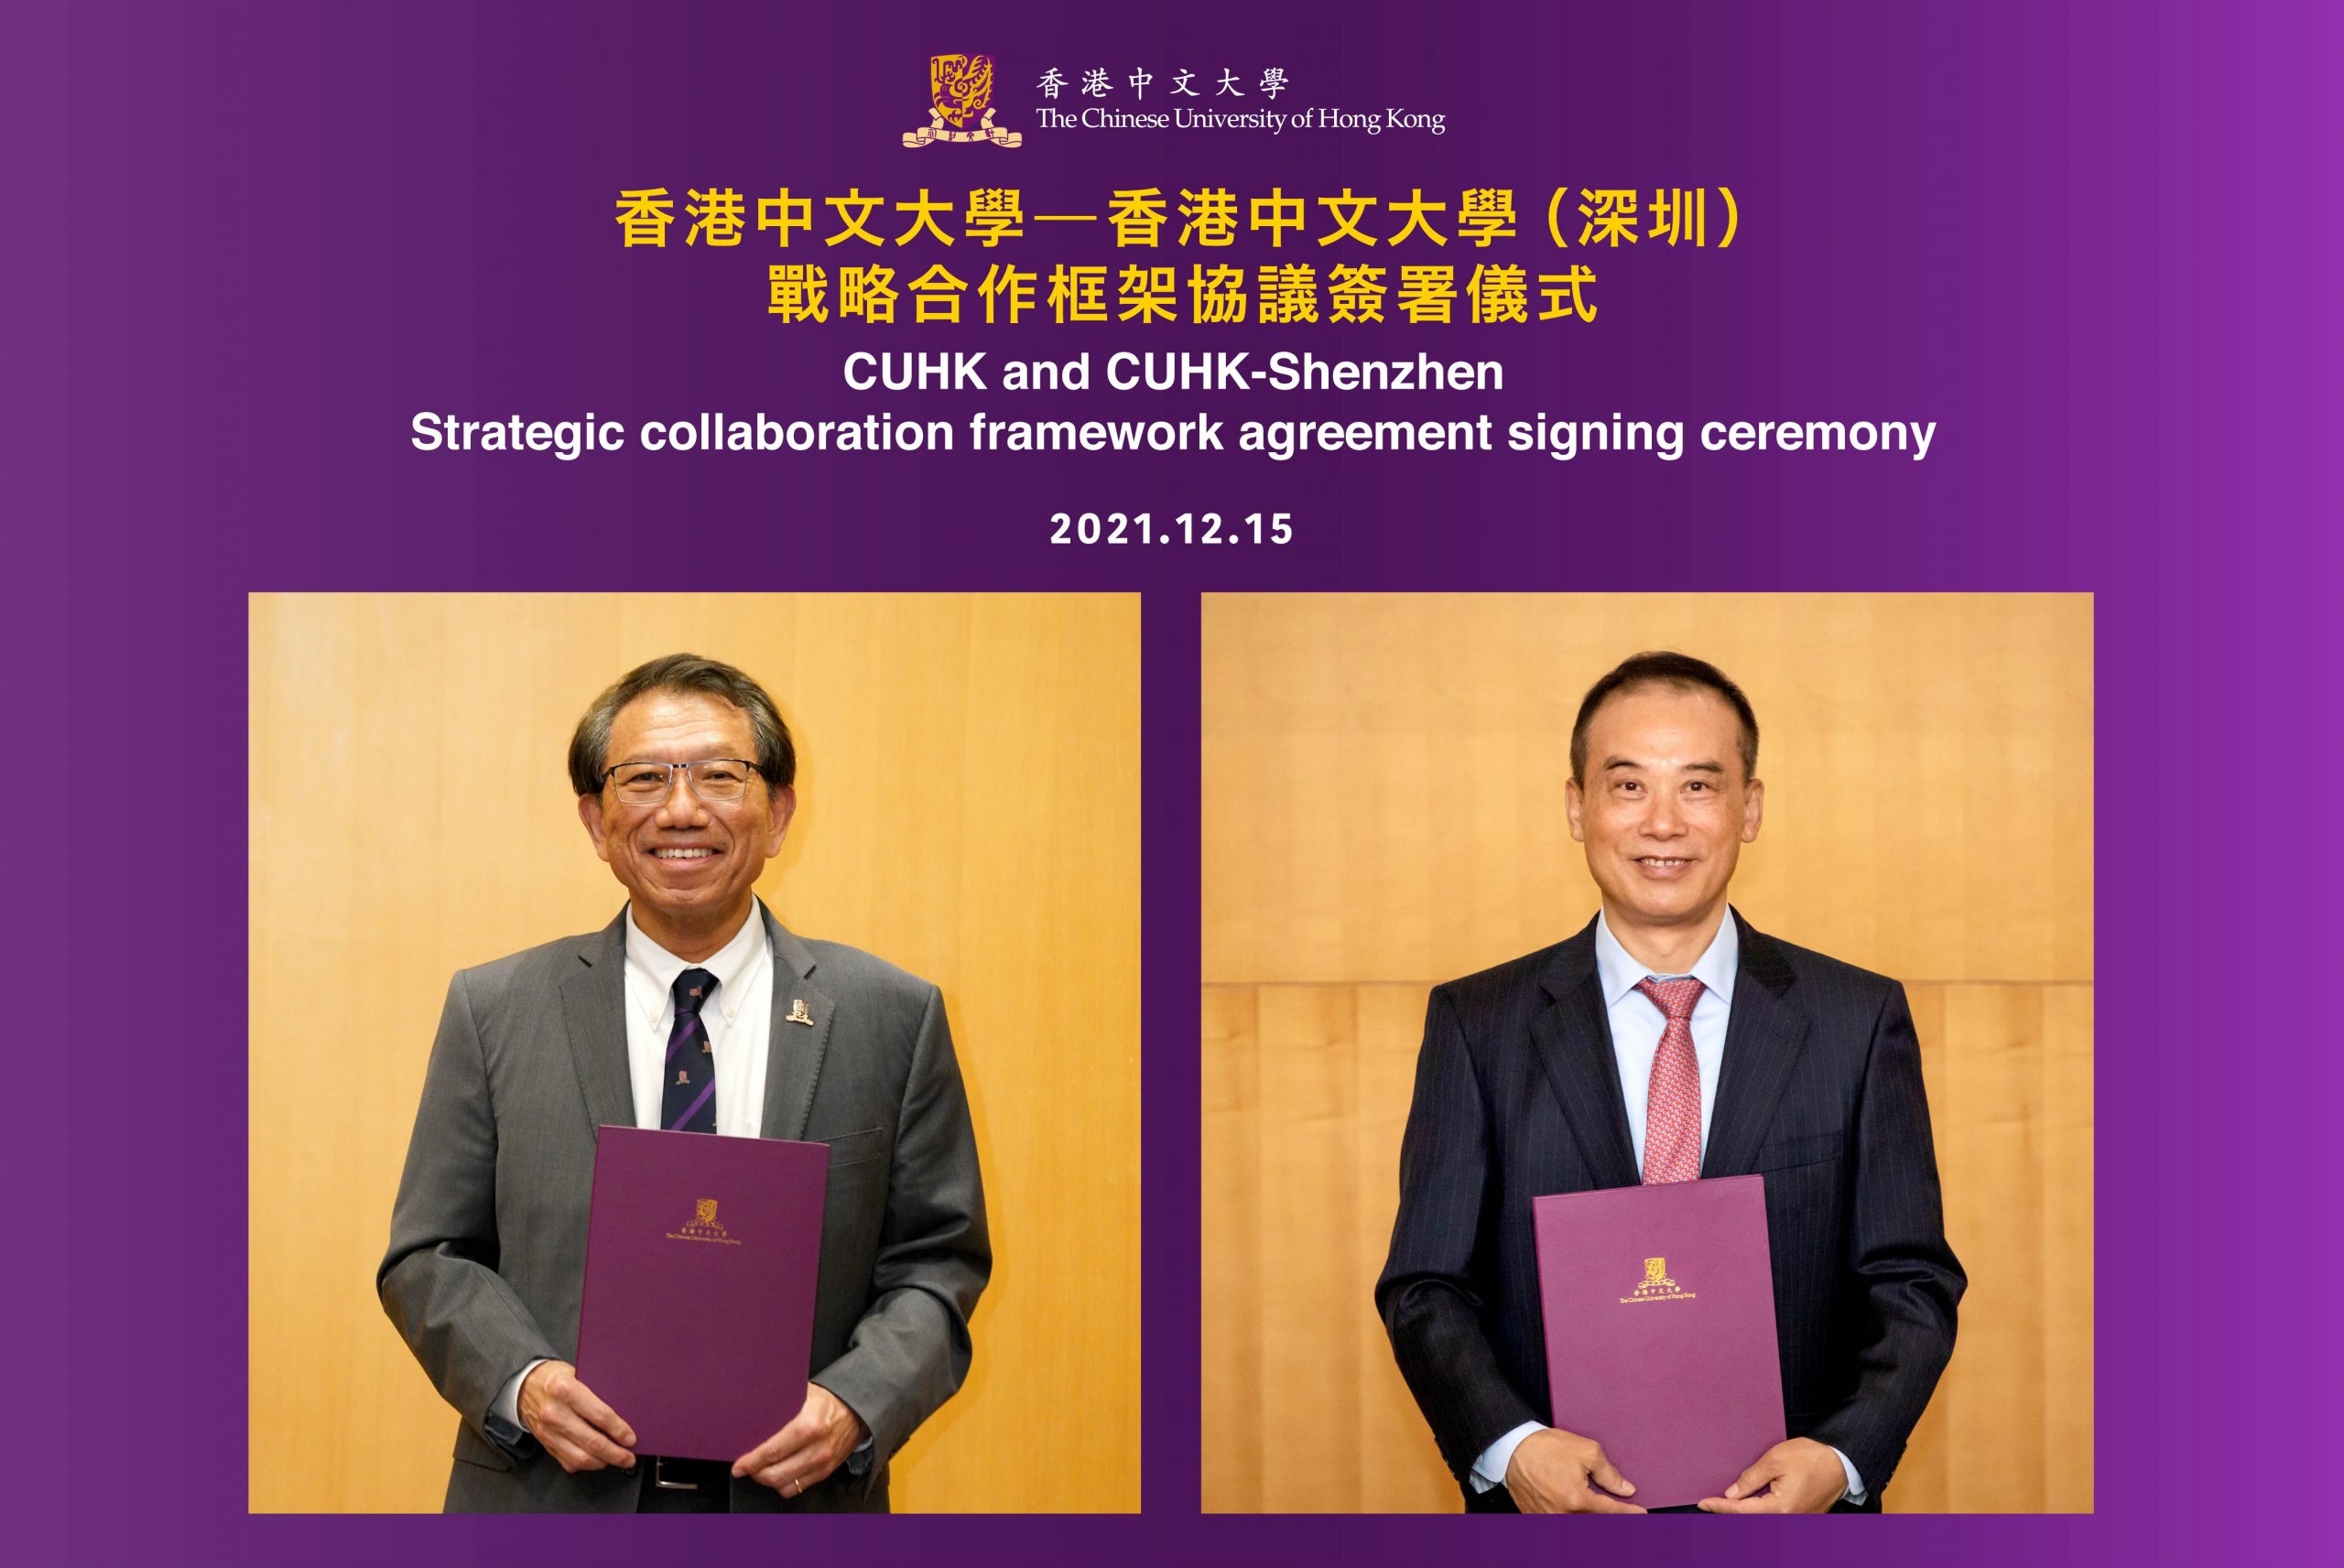 CUHK and CUHK-Shenzhen Sign Agreement